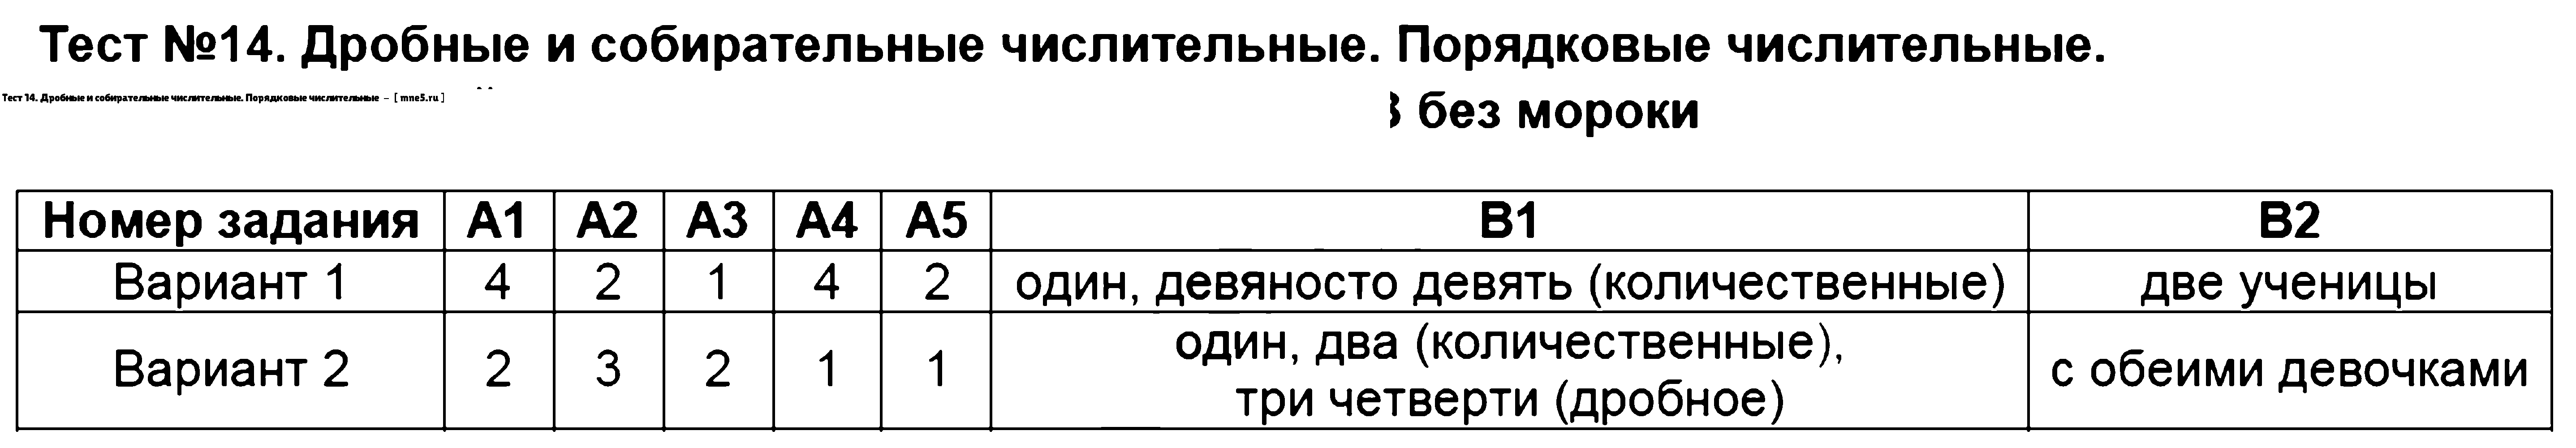 ГДЗ Русский язык 6 класс - Тест 14. Дробные и собирательные числительные. Порядковые числительные